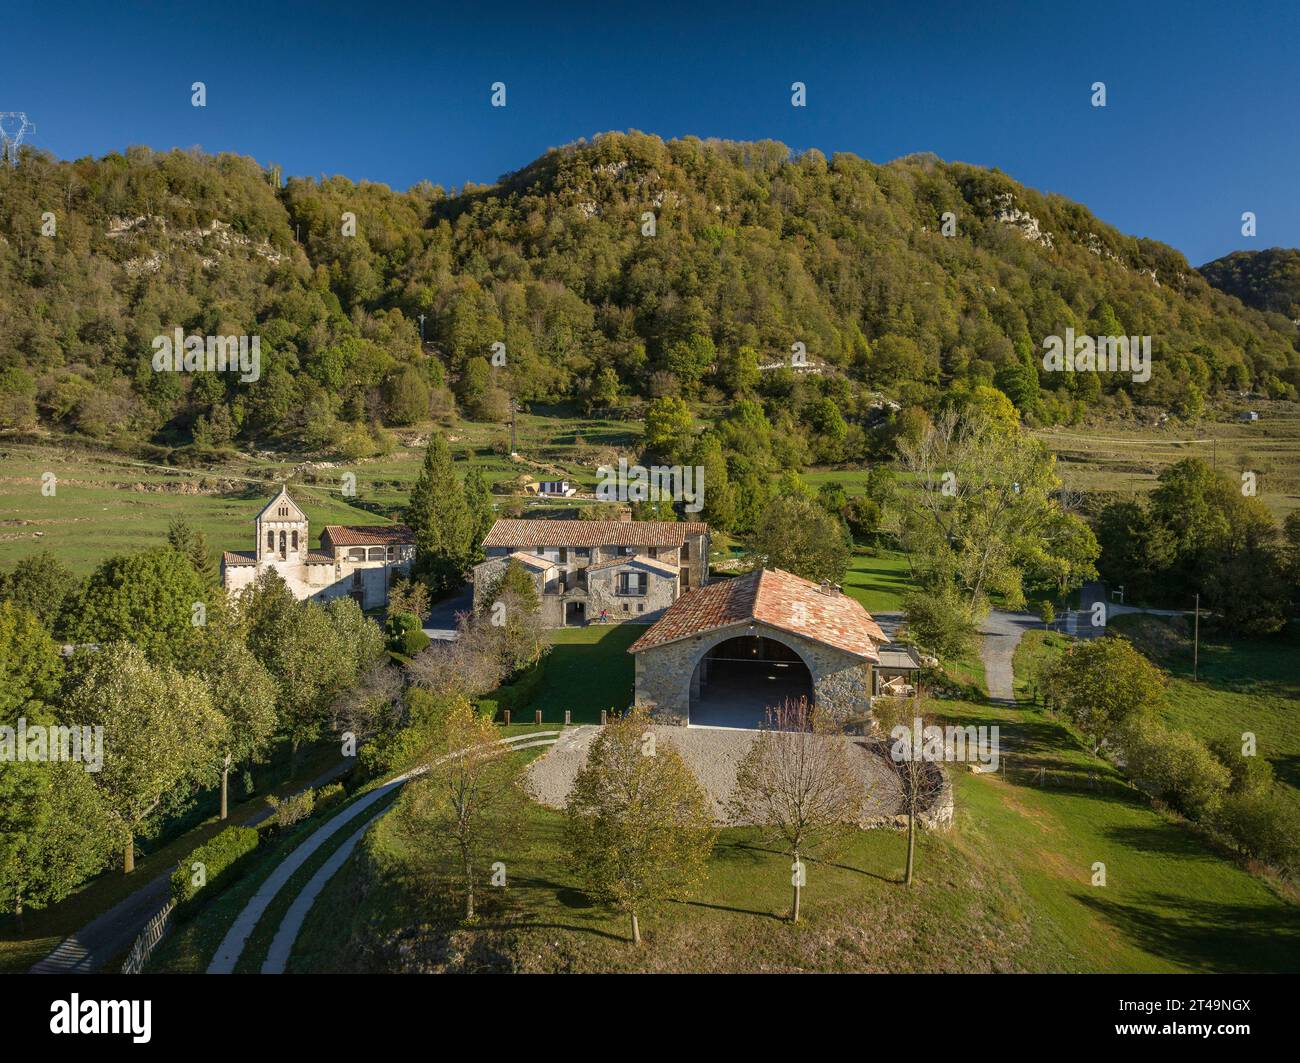 Vista aerea della casa rurale di Cal Pubill e dei dintorni rurali di Ciuret in una mattina d'autunno (Osona, Catalogna, Spagna) Foto Stock